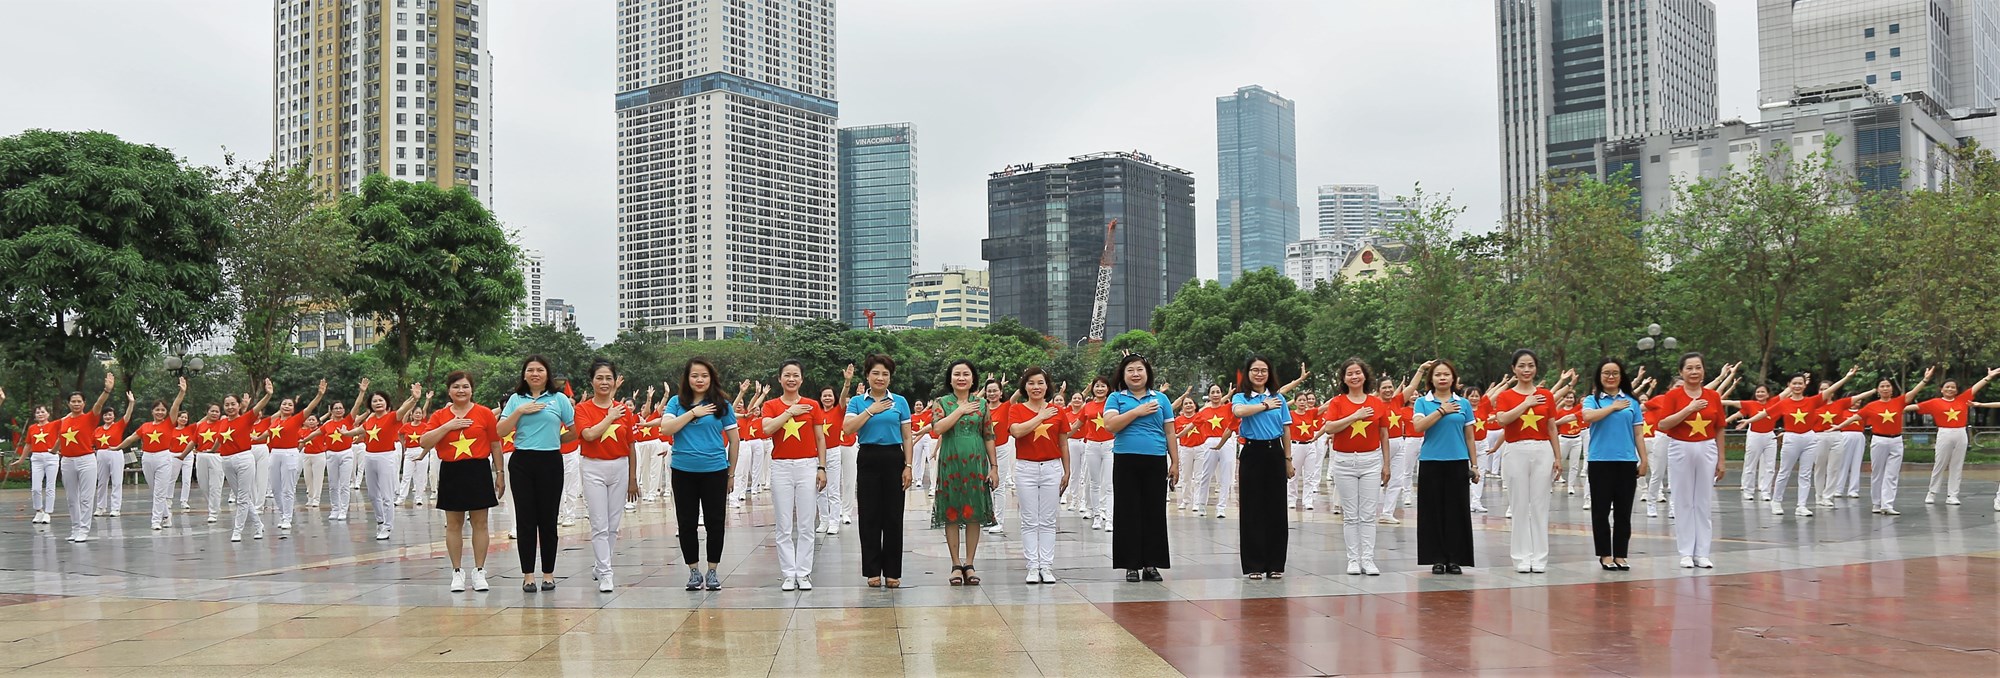 Phụ nữ Cầu Giấy rực rỡ sắc màu đồng diễn dân vũ mừng Chiến thắng Điện Biên Phủ - ảnh 7